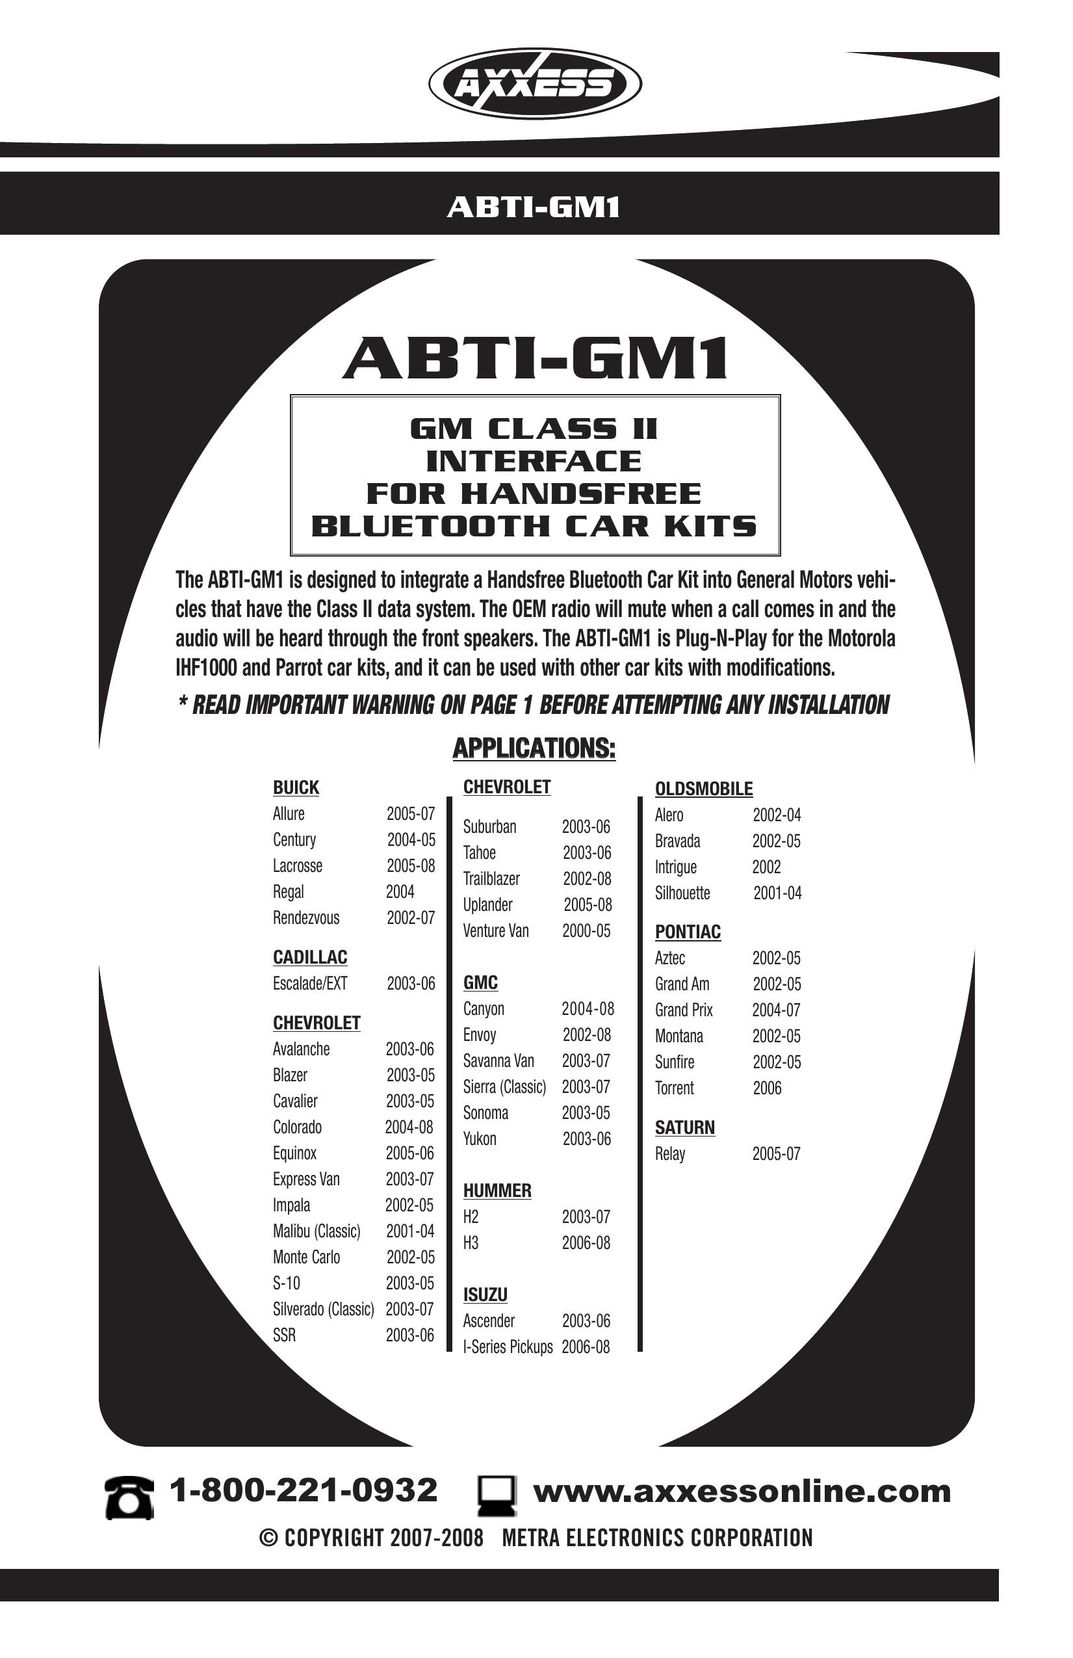 Axxess Interface ABTI-GM1 Bluetooth Headset User Manual